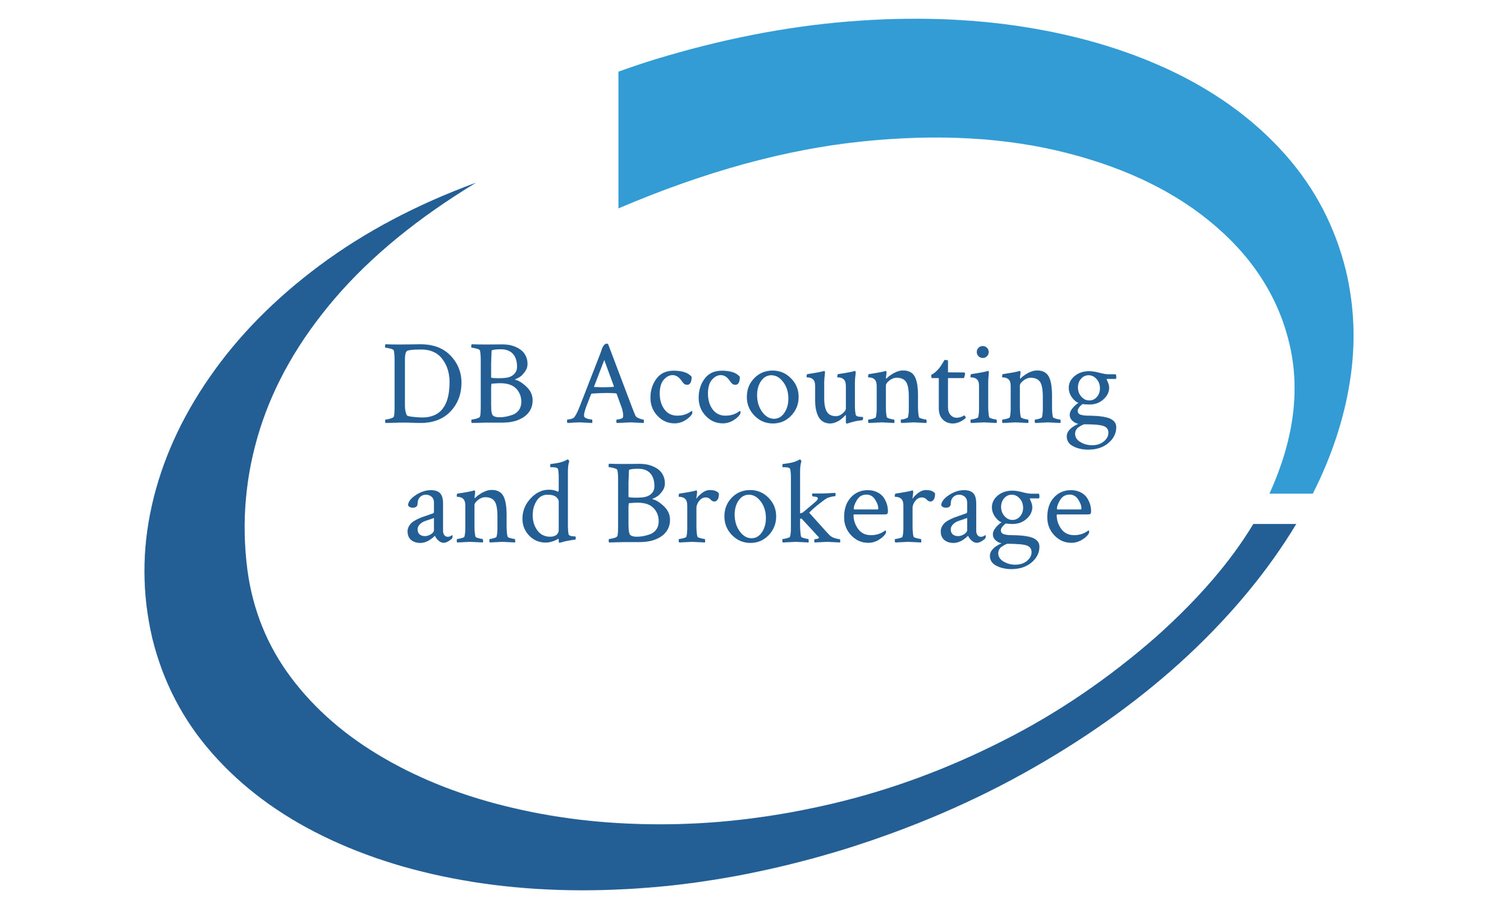 DB Accounting and Brokerage